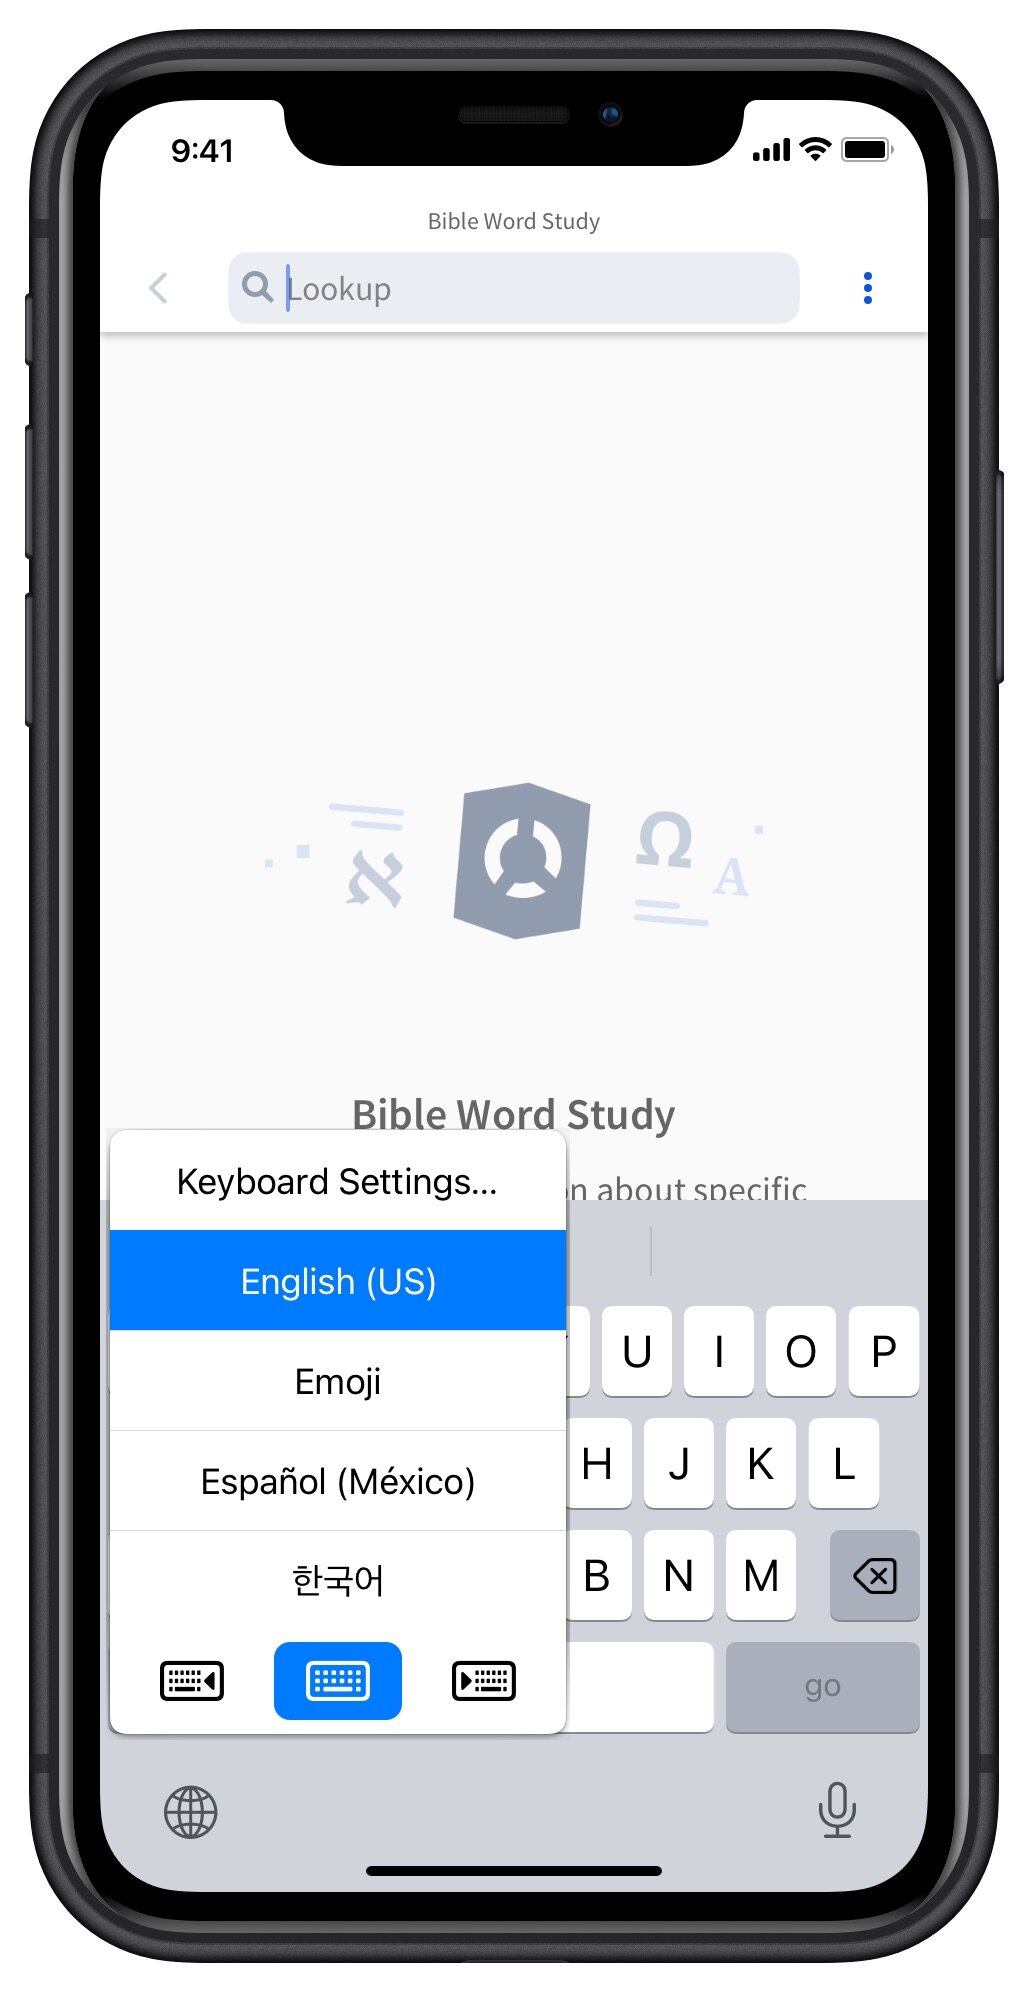 Verbum Mobile - Estudo de Palavras Bíblicas – Verbum